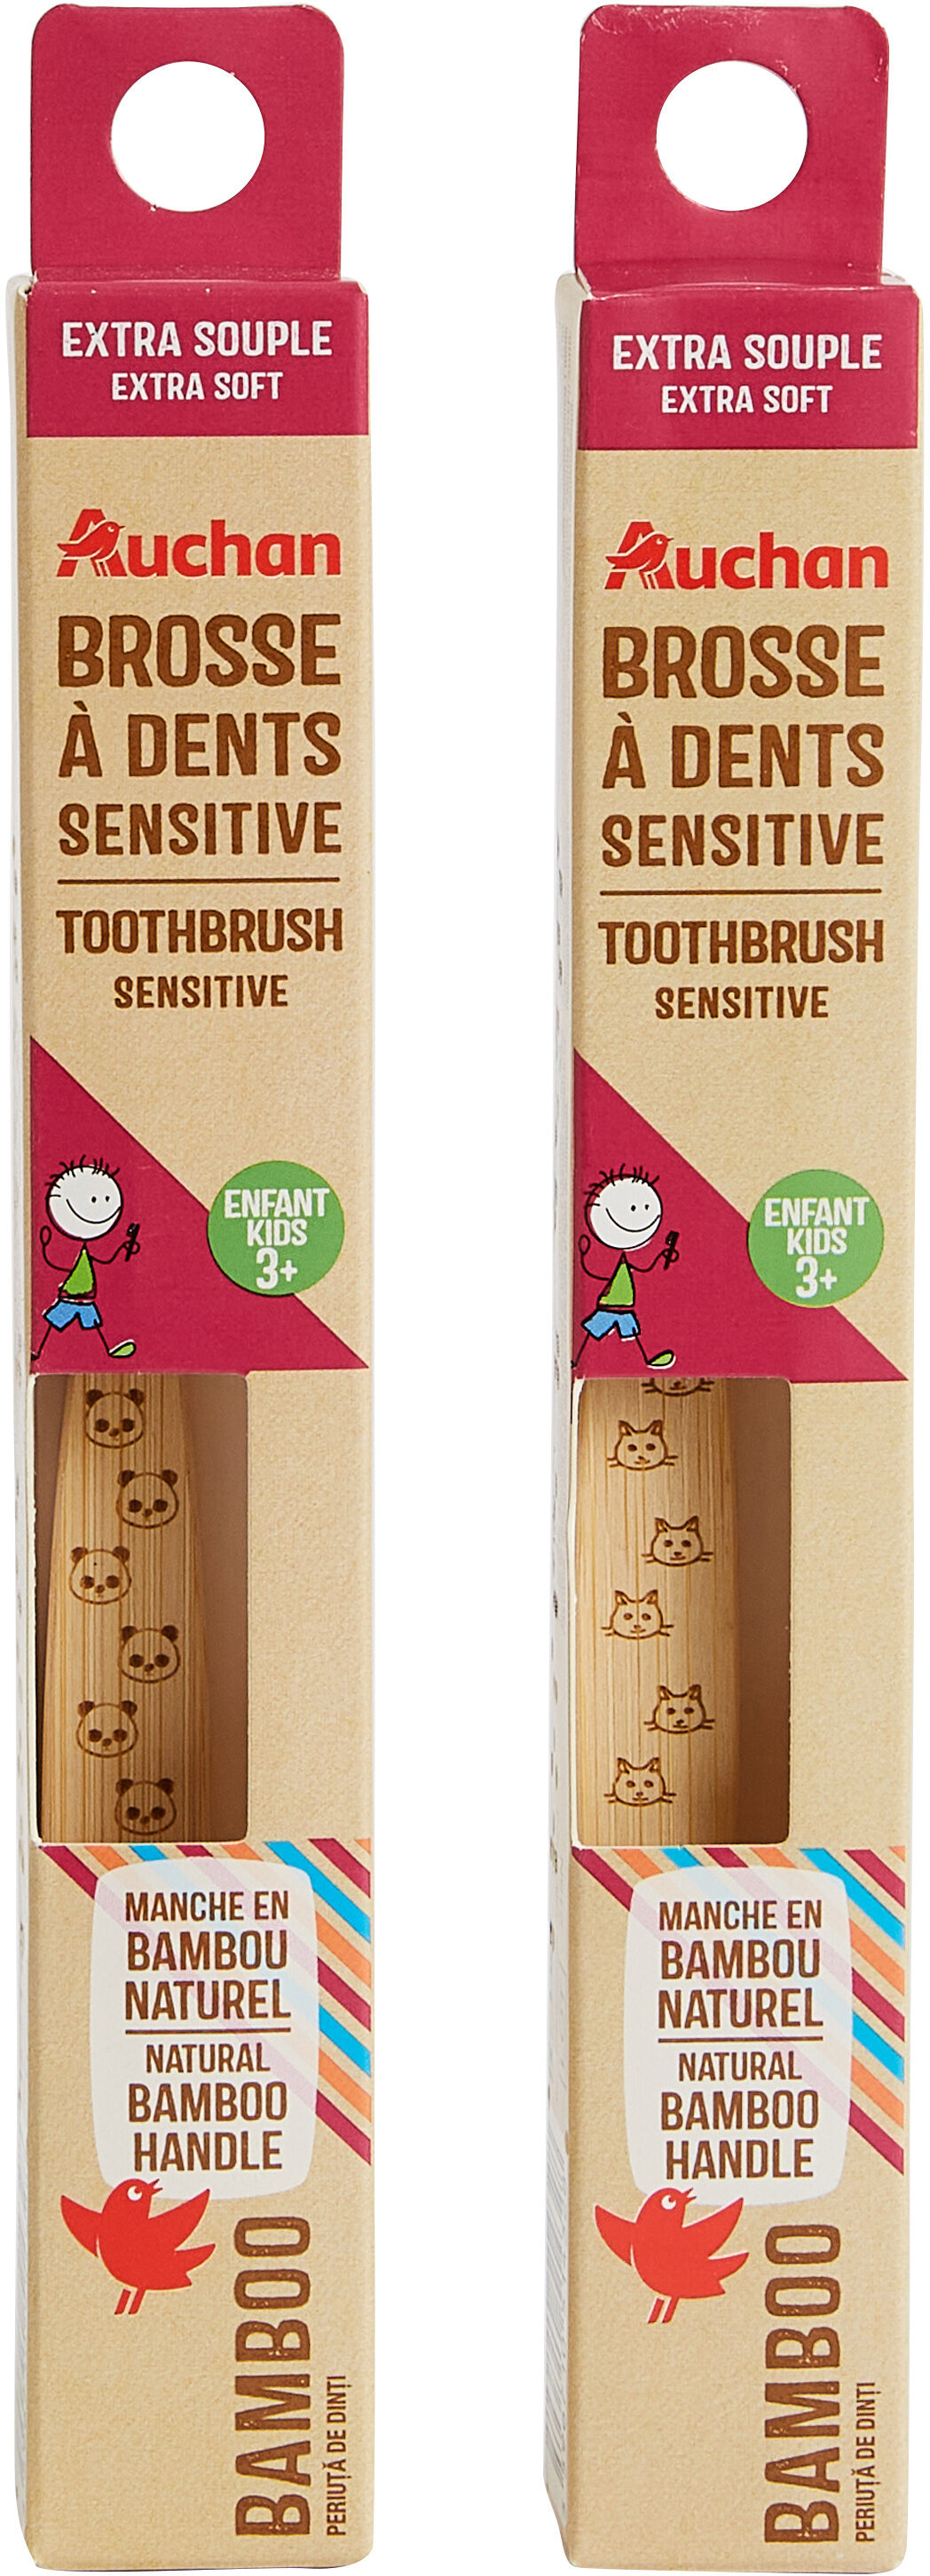 Brosse à dents sensitive Enfant 3+ - Produit - fr